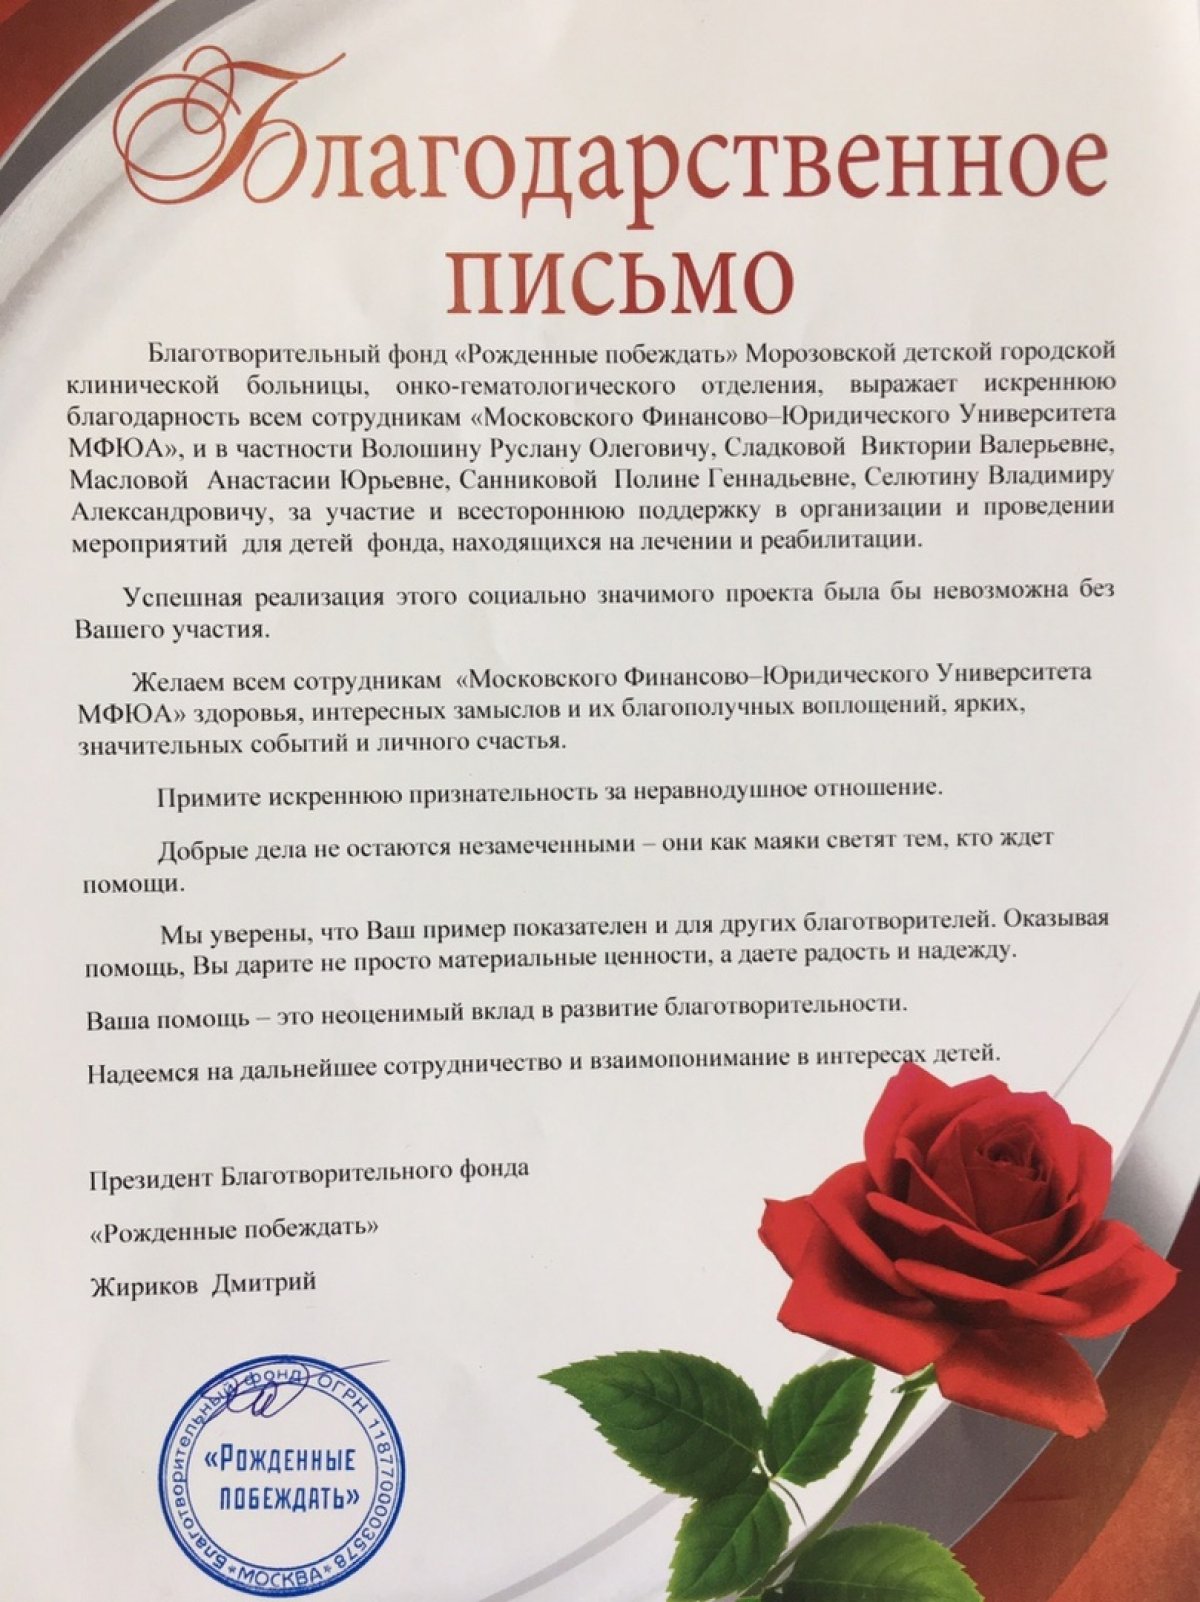 Благотворительный фонд «Рожденные побеждать» выразил благодарность Московскому финансово-юридическому университету МФЮА